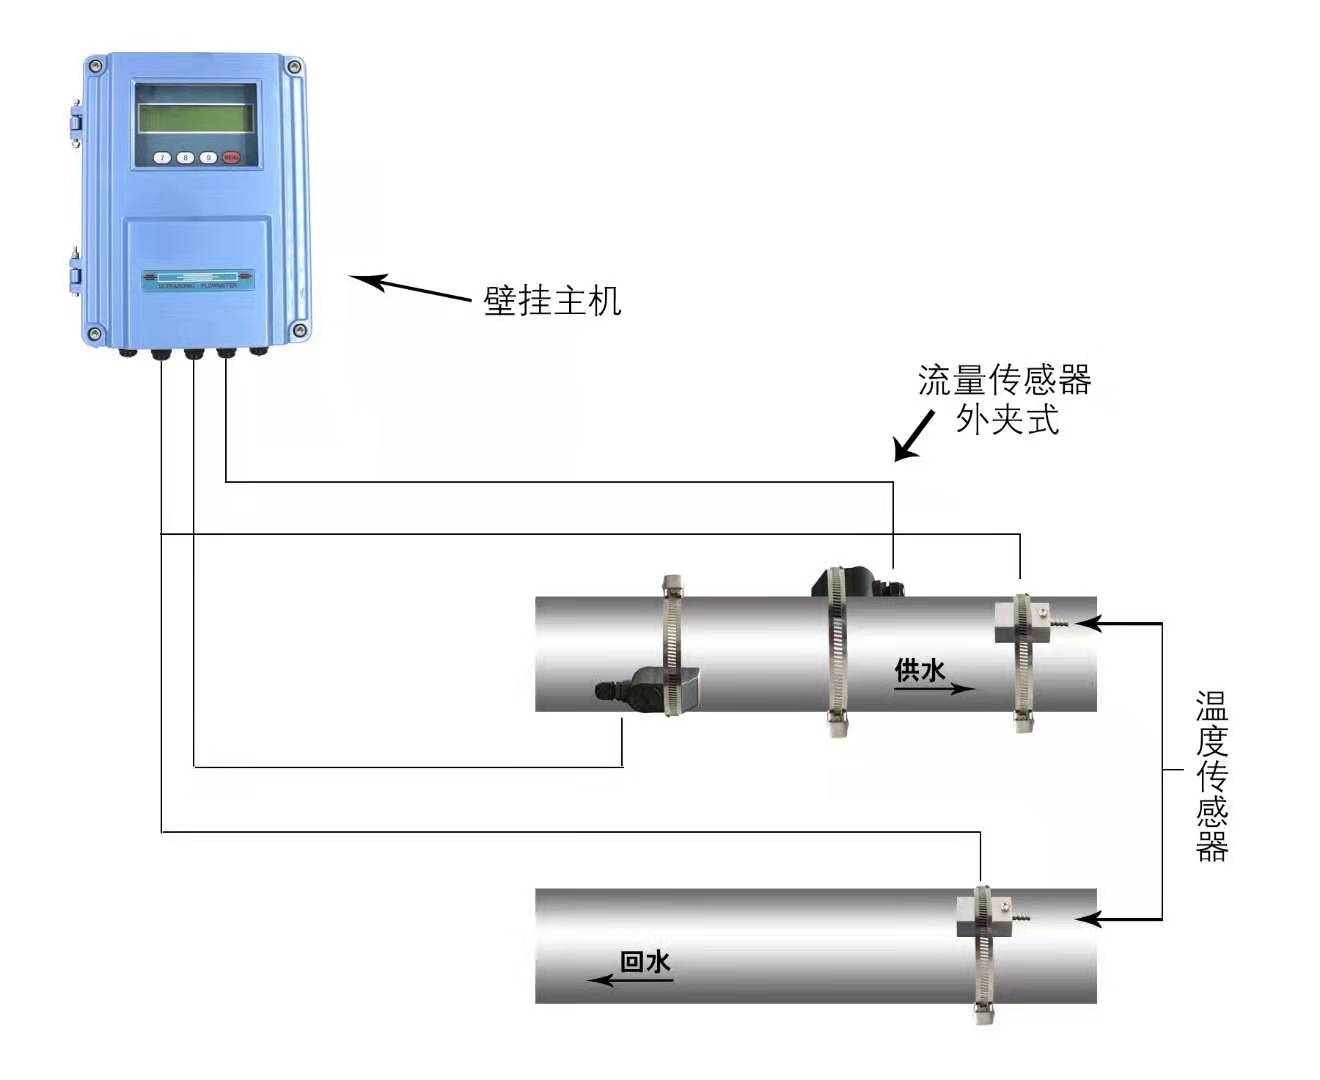 连云港市TDS-100F1超声波流量计安装直管段要求大连海峰